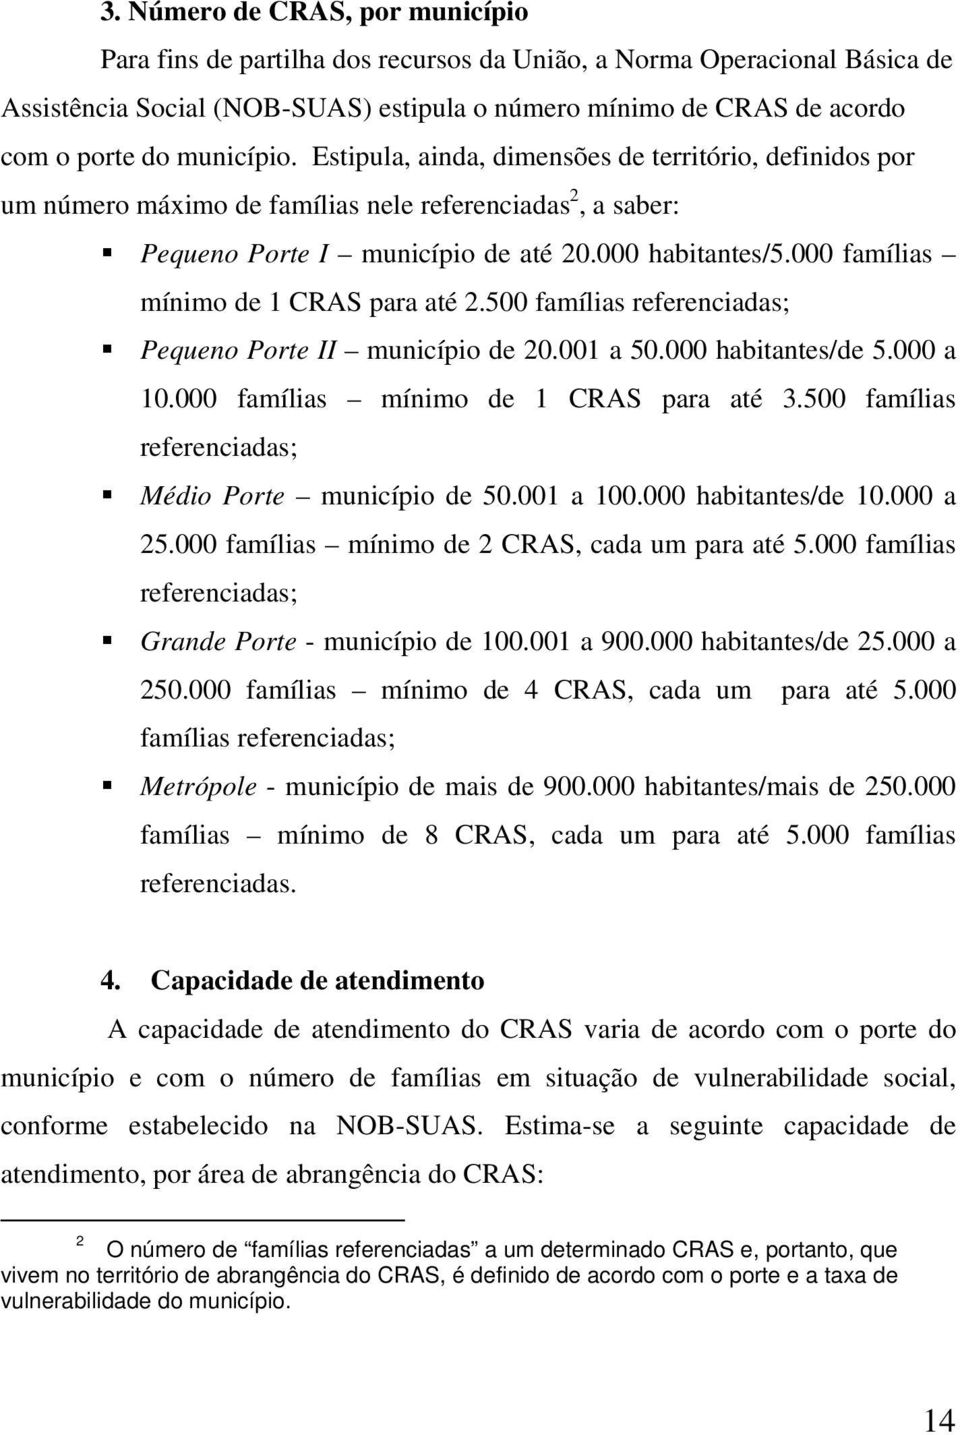 000 famílias mínimo de 1 CRAS para até 2.500 famílias referenciadas; Pequeno Porte II município de 20.001 a 50.000 habitantes/de 5.000 a 10.000 famílias mínimo de 1 CRAS para até 3.